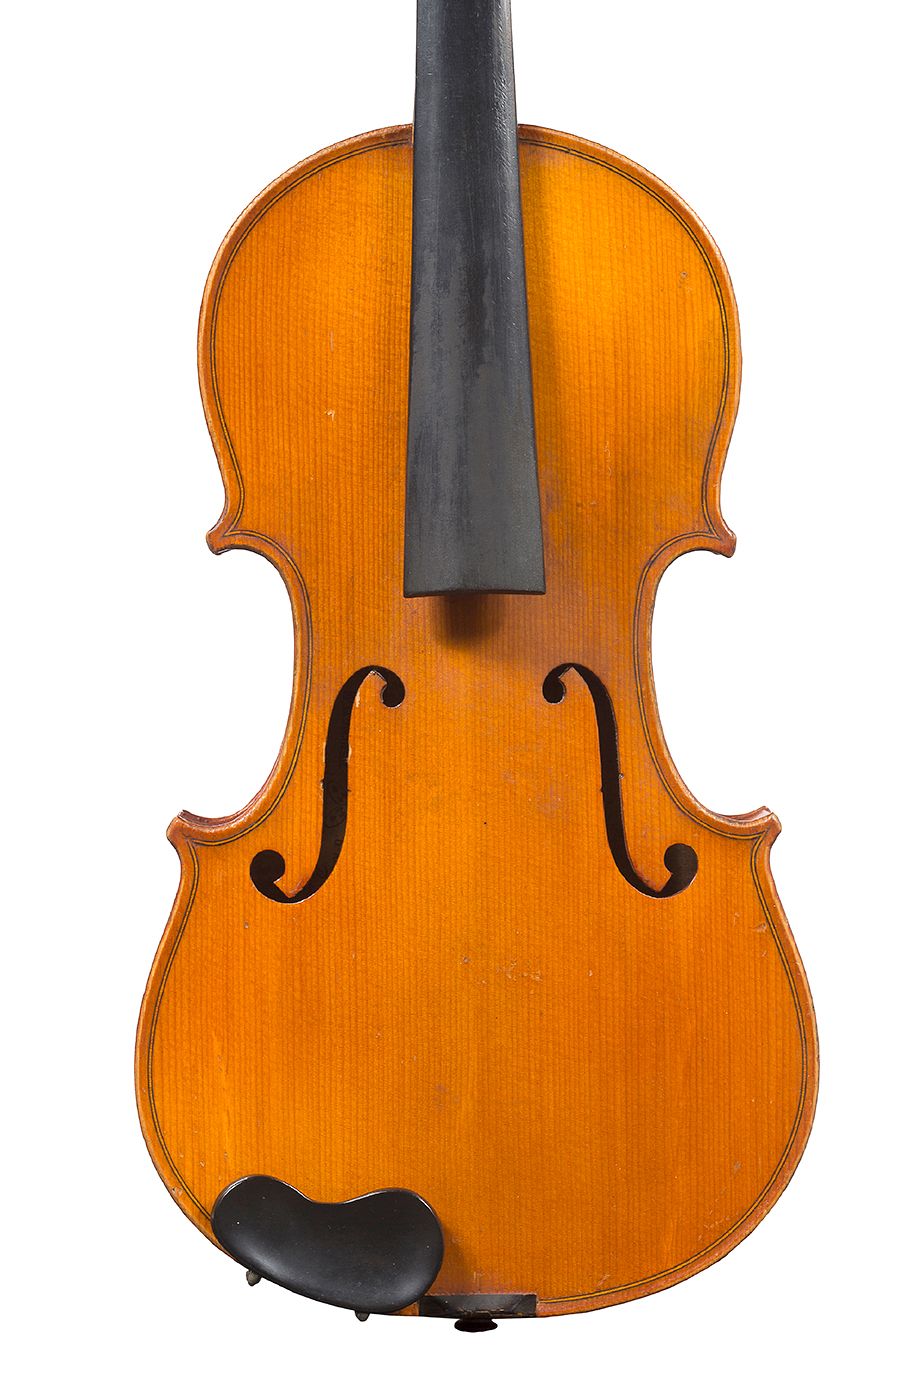 Null 米勒库尔制造的研究型小提琴
工业工厂，弗朗索瓦-布勒东 "安古兰公爵夫人"。
开放式的后背接合处
在CC的底部连接处有铁渍 
背面359毫米